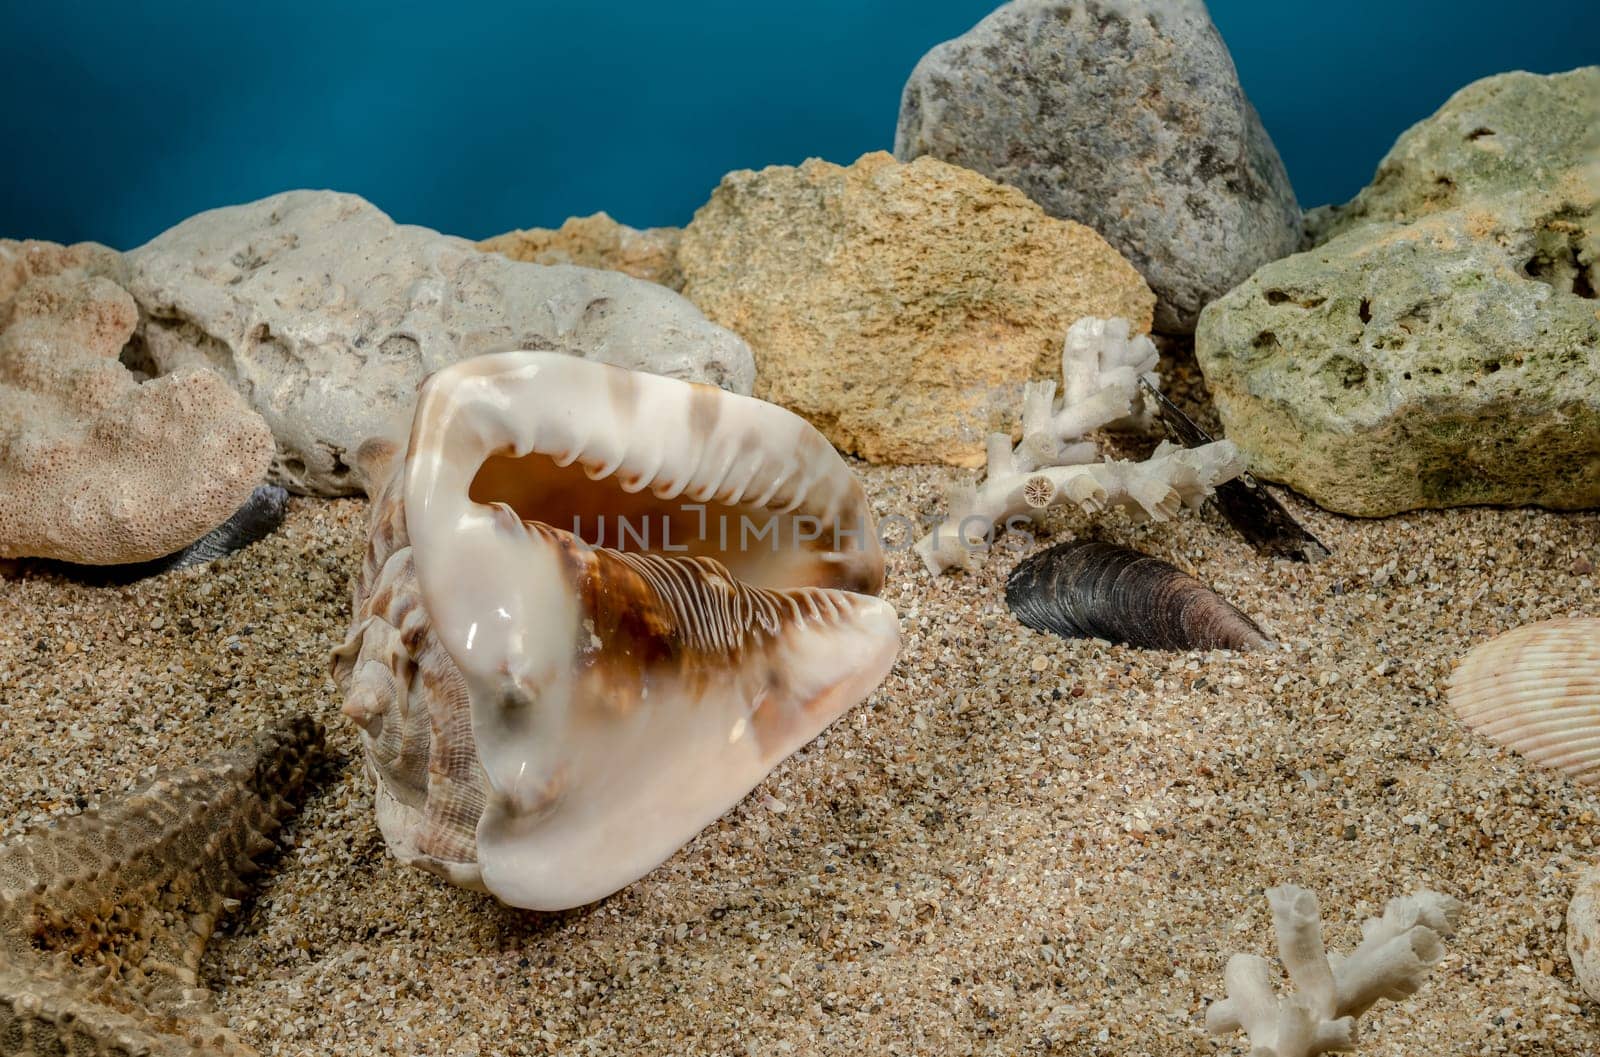 King Helmet seashell underwater by Multipedia